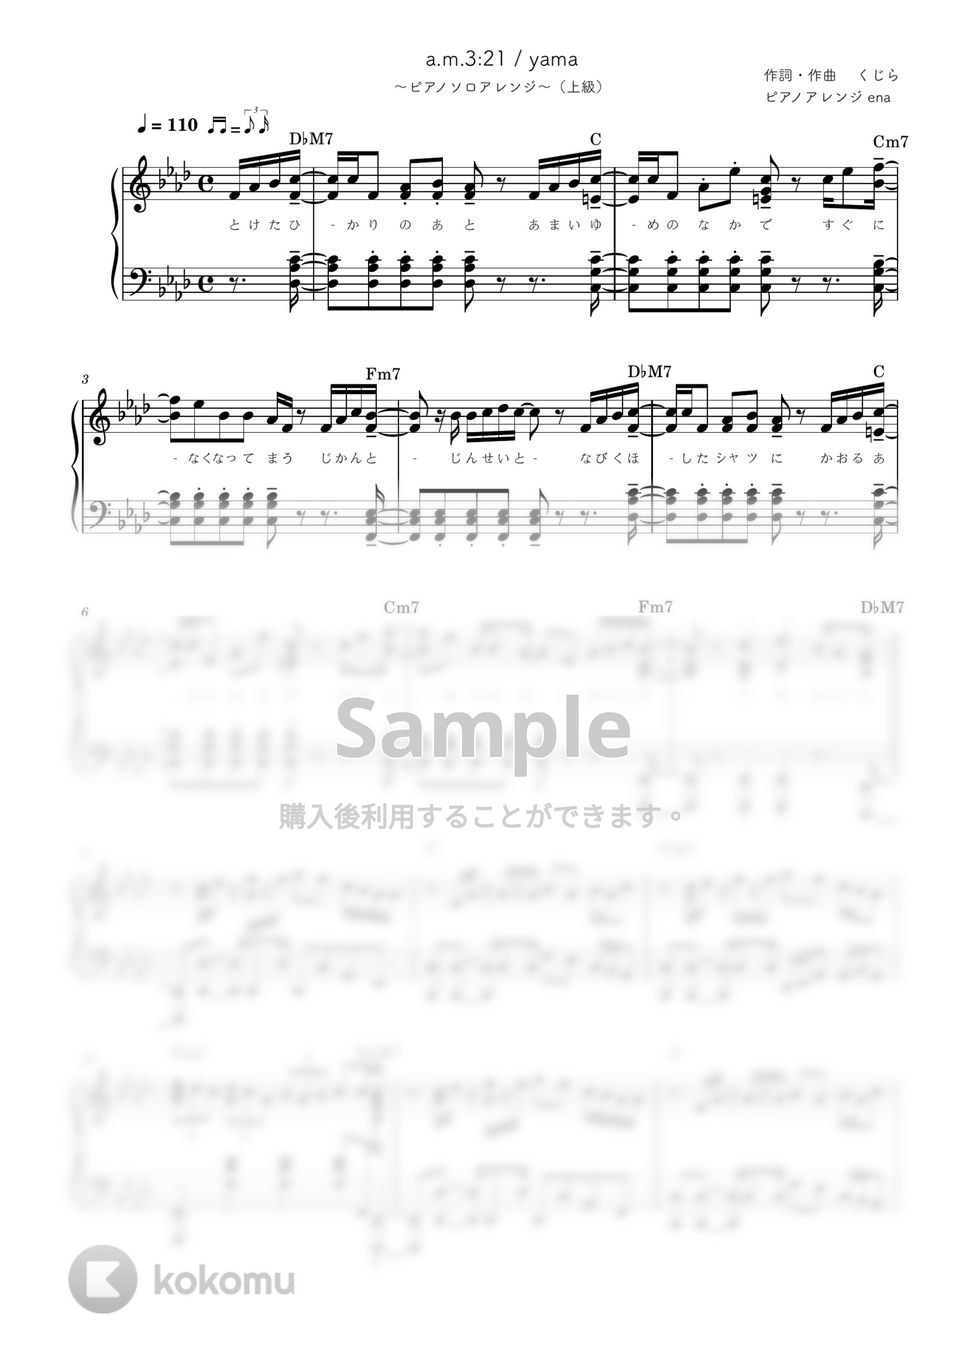 yama - a.m.3:21 (ピアノソロ / 上級 /歌詞・コードあり / くじら作詞作曲) by ena